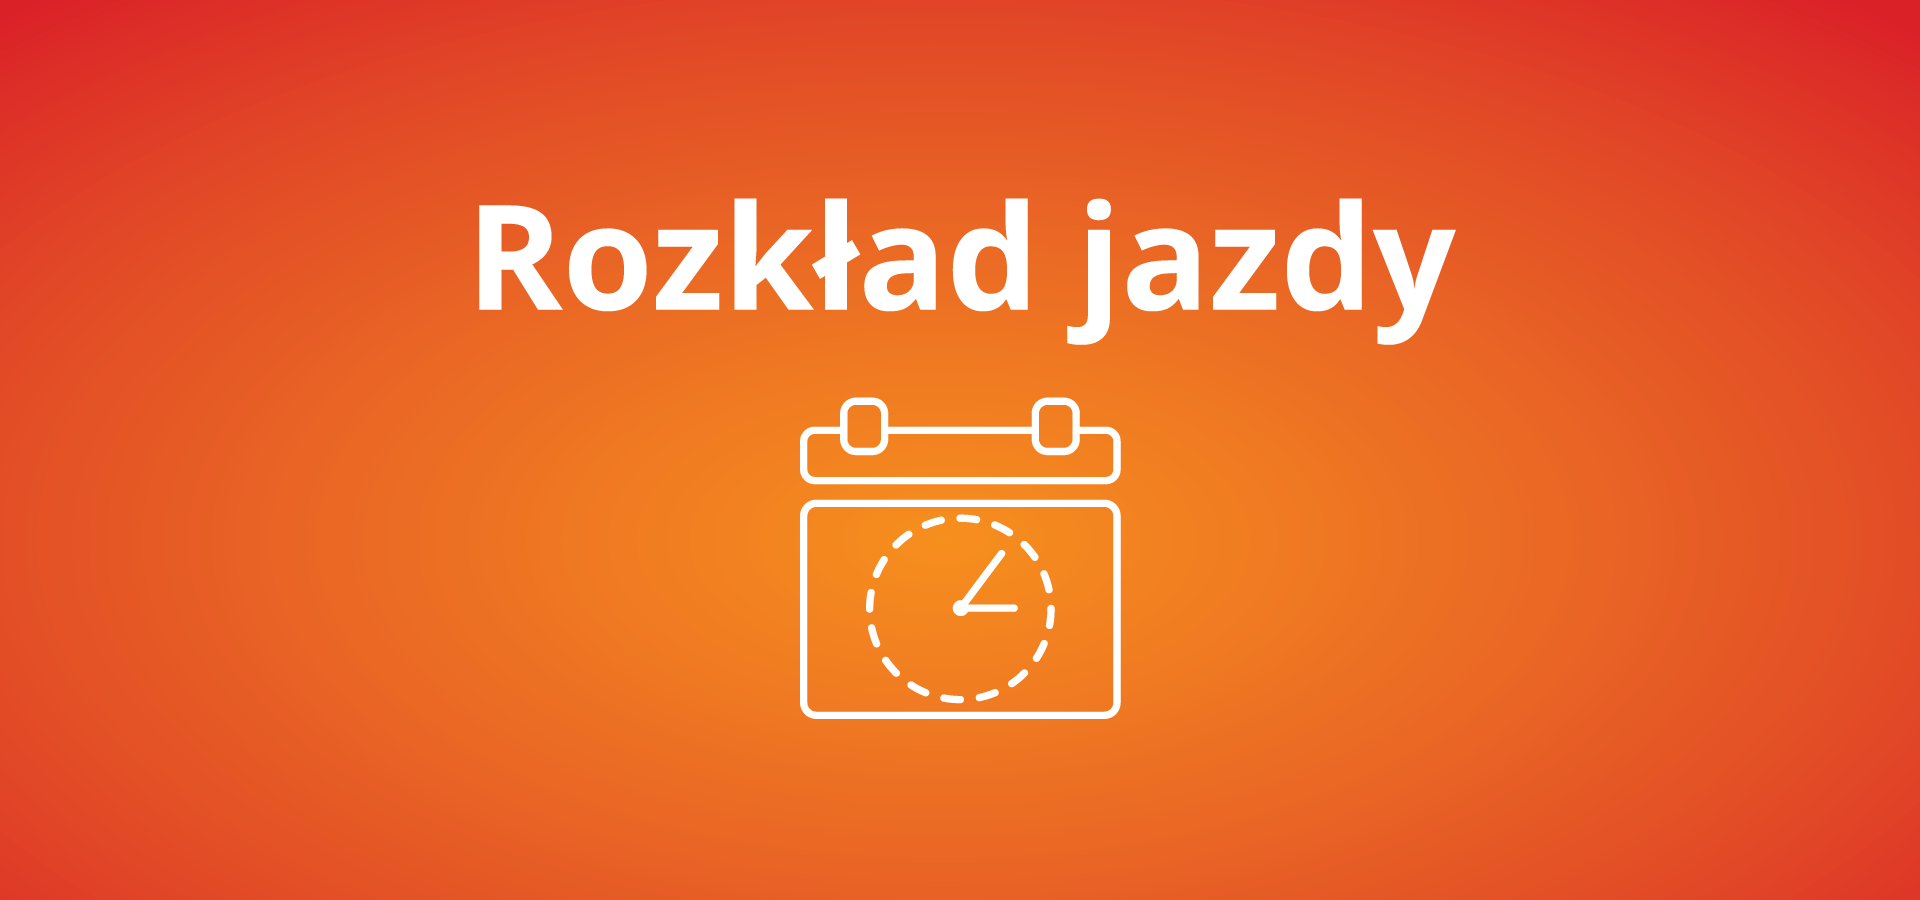 Zmiany w rozkładzie jazdy pociągów od 13.03.2022 r. do 11.06.2022 r. w województwie małopolskim